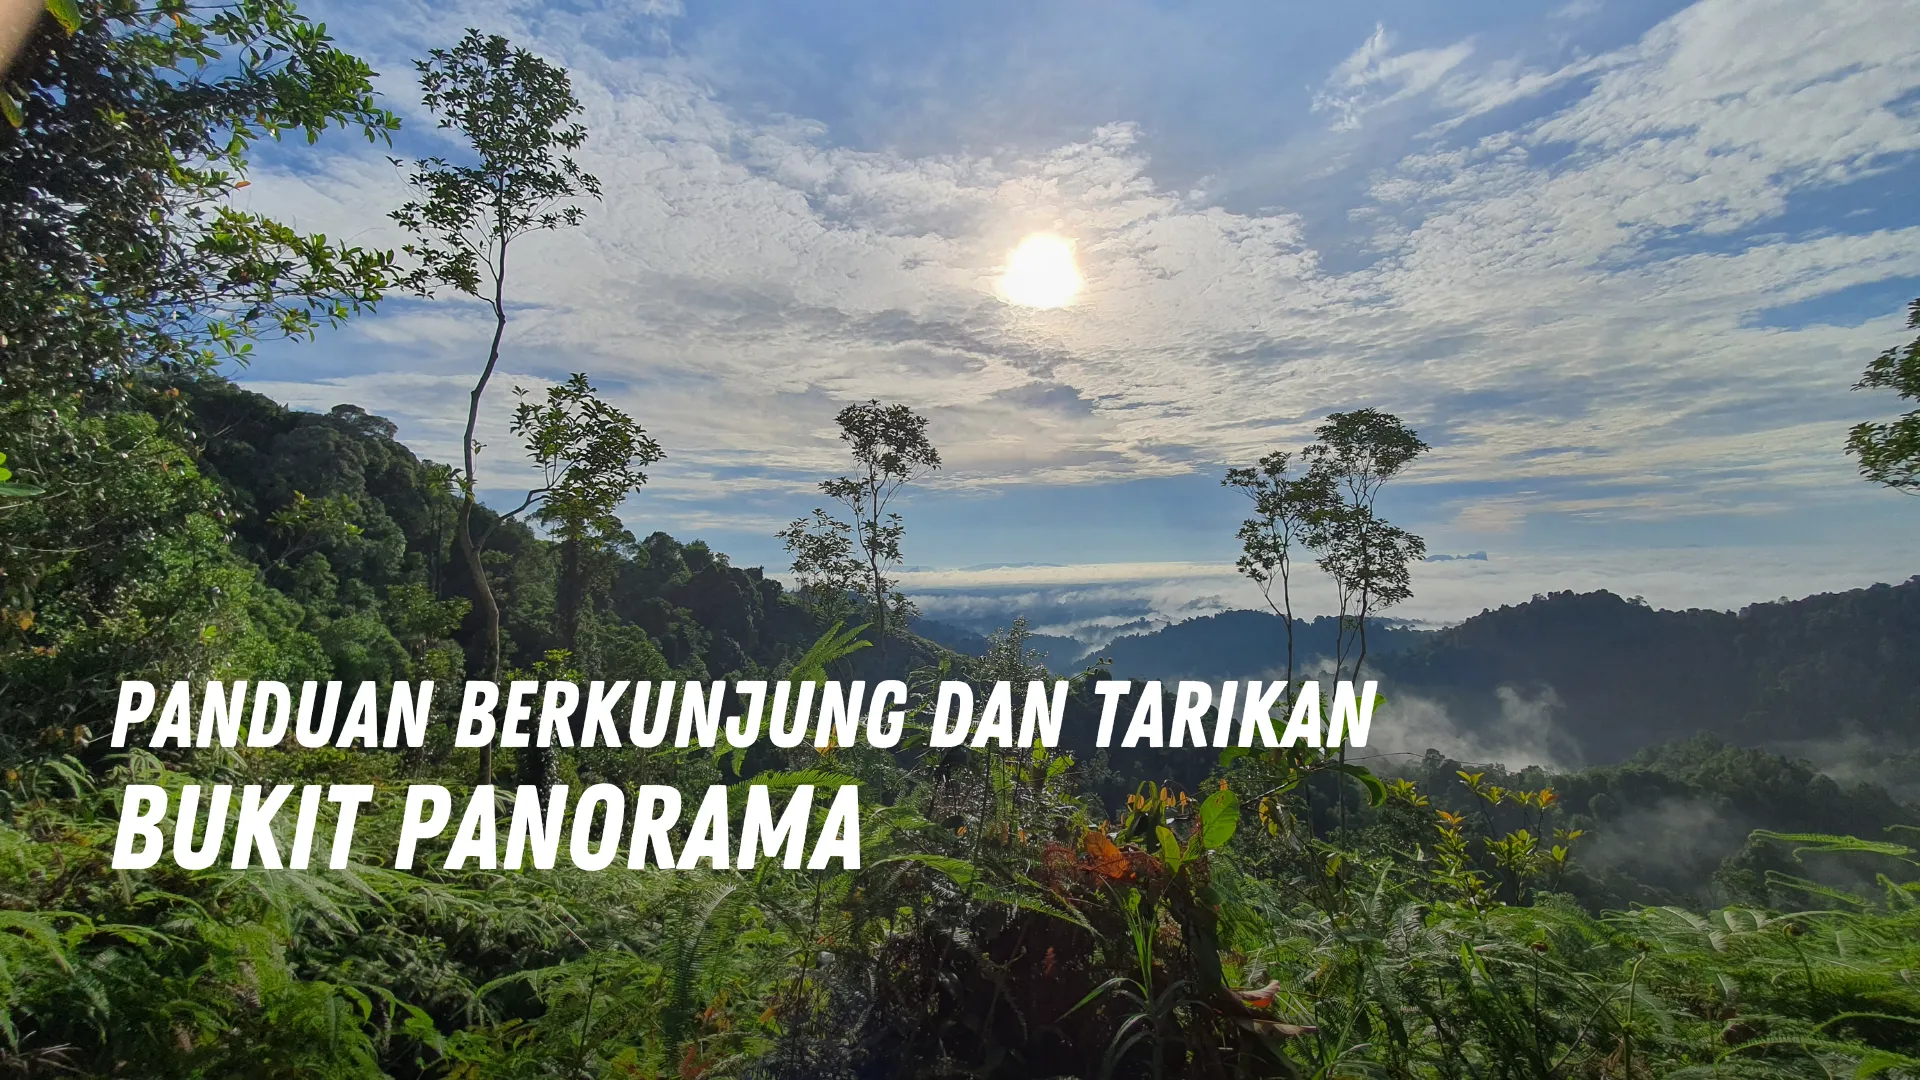 Review Bukit Panorama Malaysia